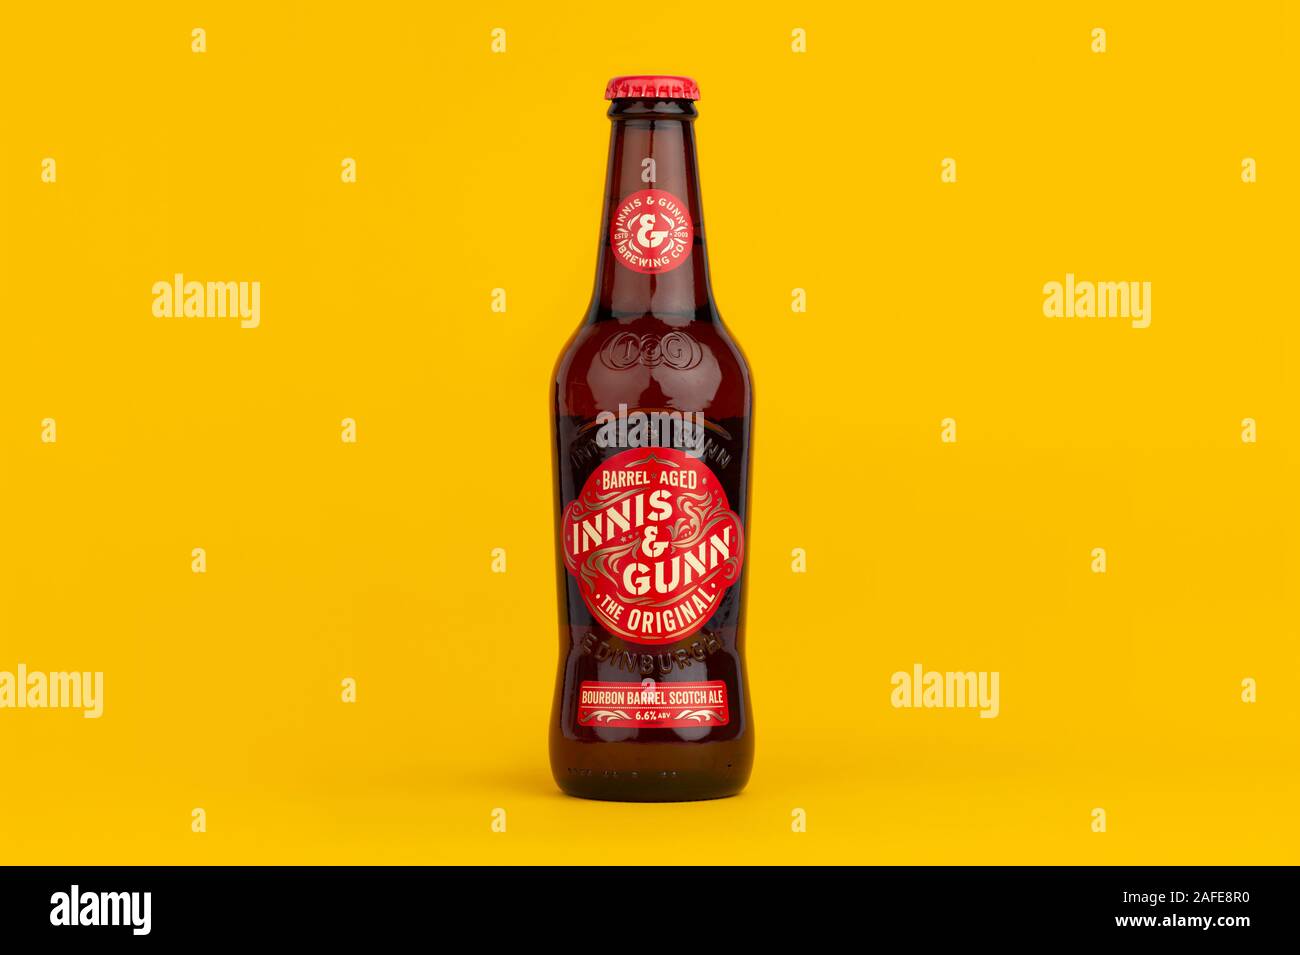 Eine Flasche Innis & Gunn Bourbon Barrel scotch ale Schuß auf einen gelben Hintergrund. Stockfoto